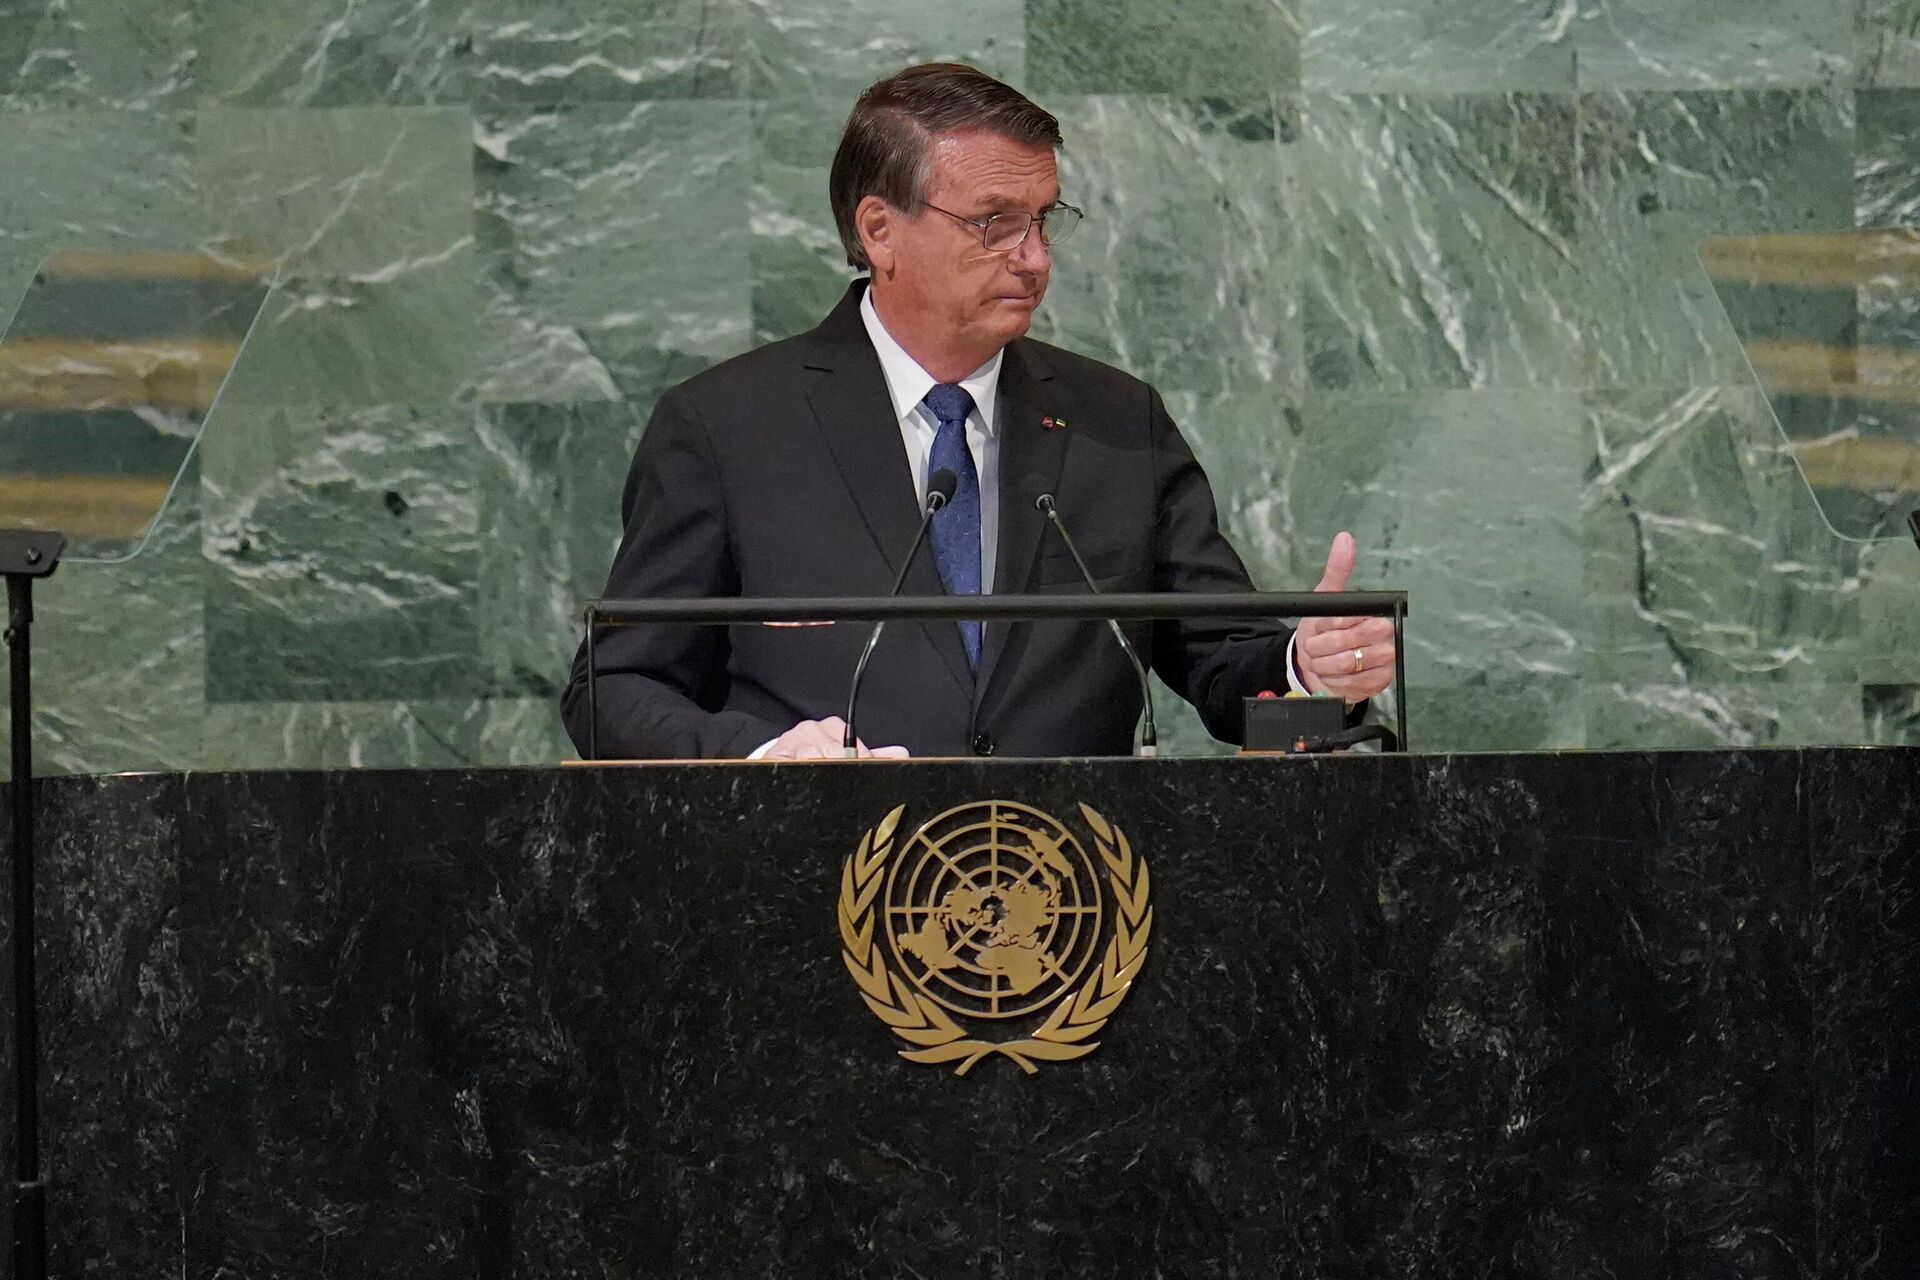 O presidente brasileiro, Jair Bolsonaro, discursa durante a 77ª Assembleia Geral da Organização das Nações Unidas (ONU), em Nova York, em 20 de setembro de 2022 - Sputnik Brasil, 1920, 20.09.2022